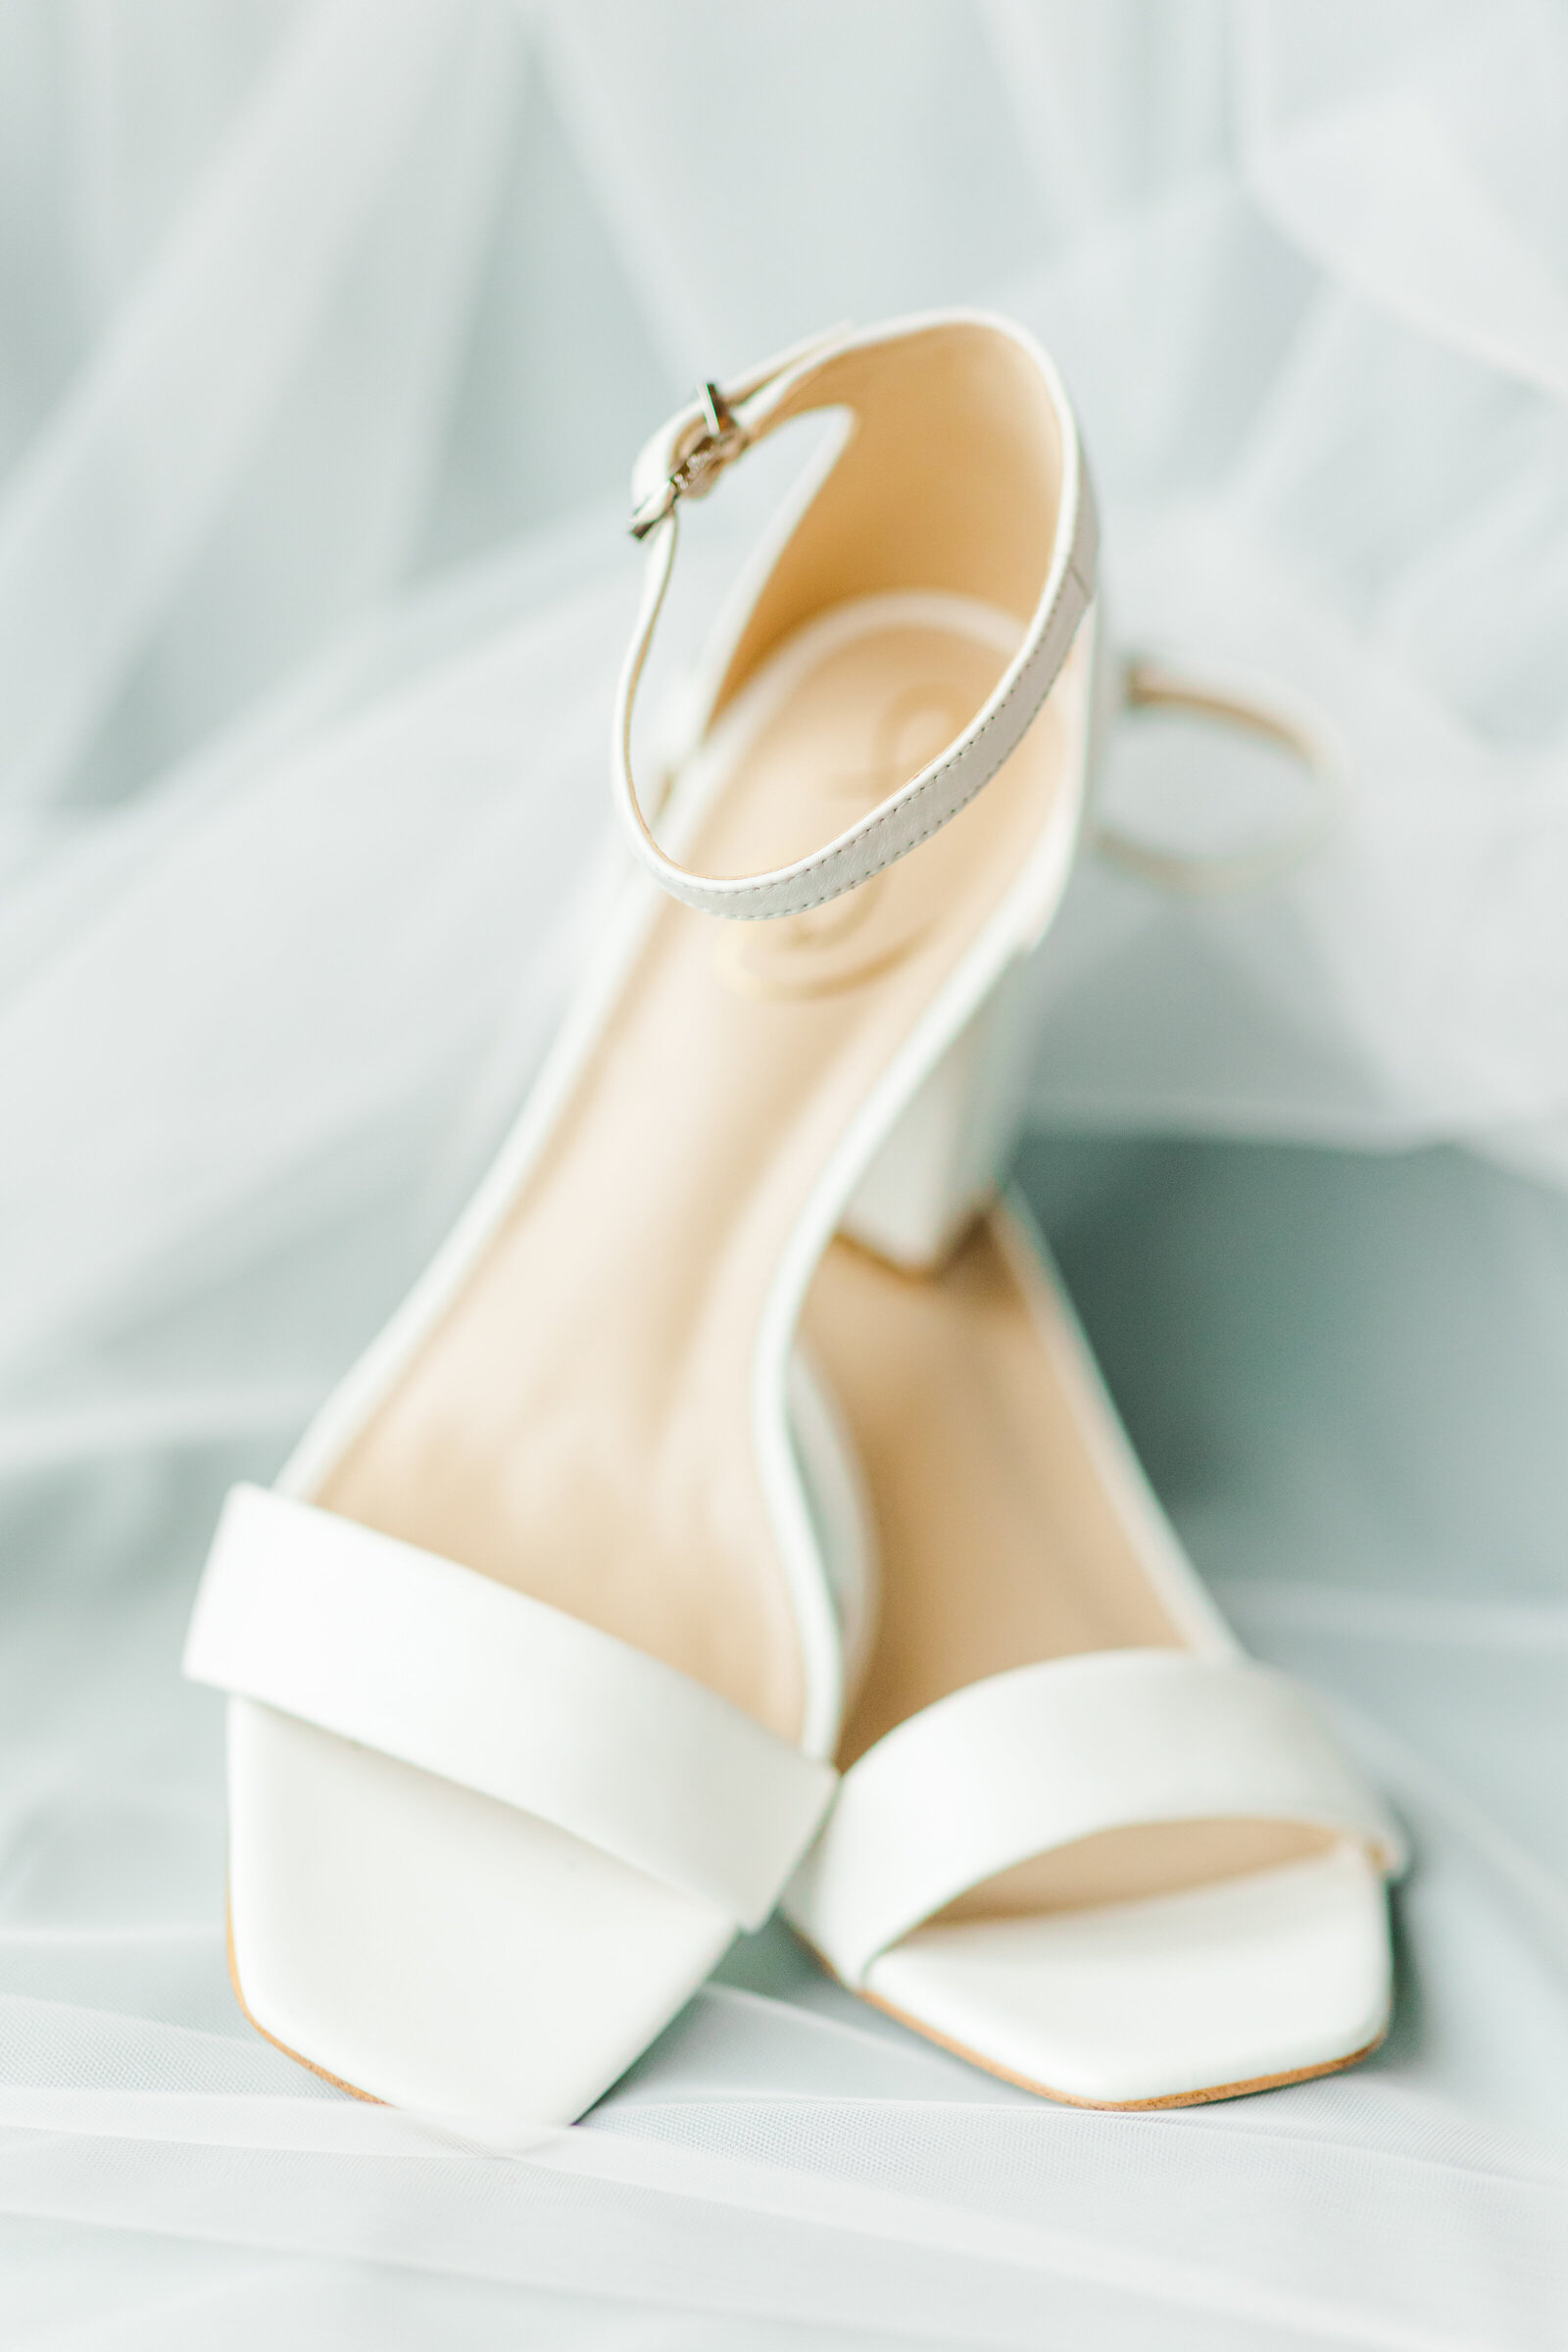 29_barnwood_events_wedding_madison_wisconsin_wedding_shoes